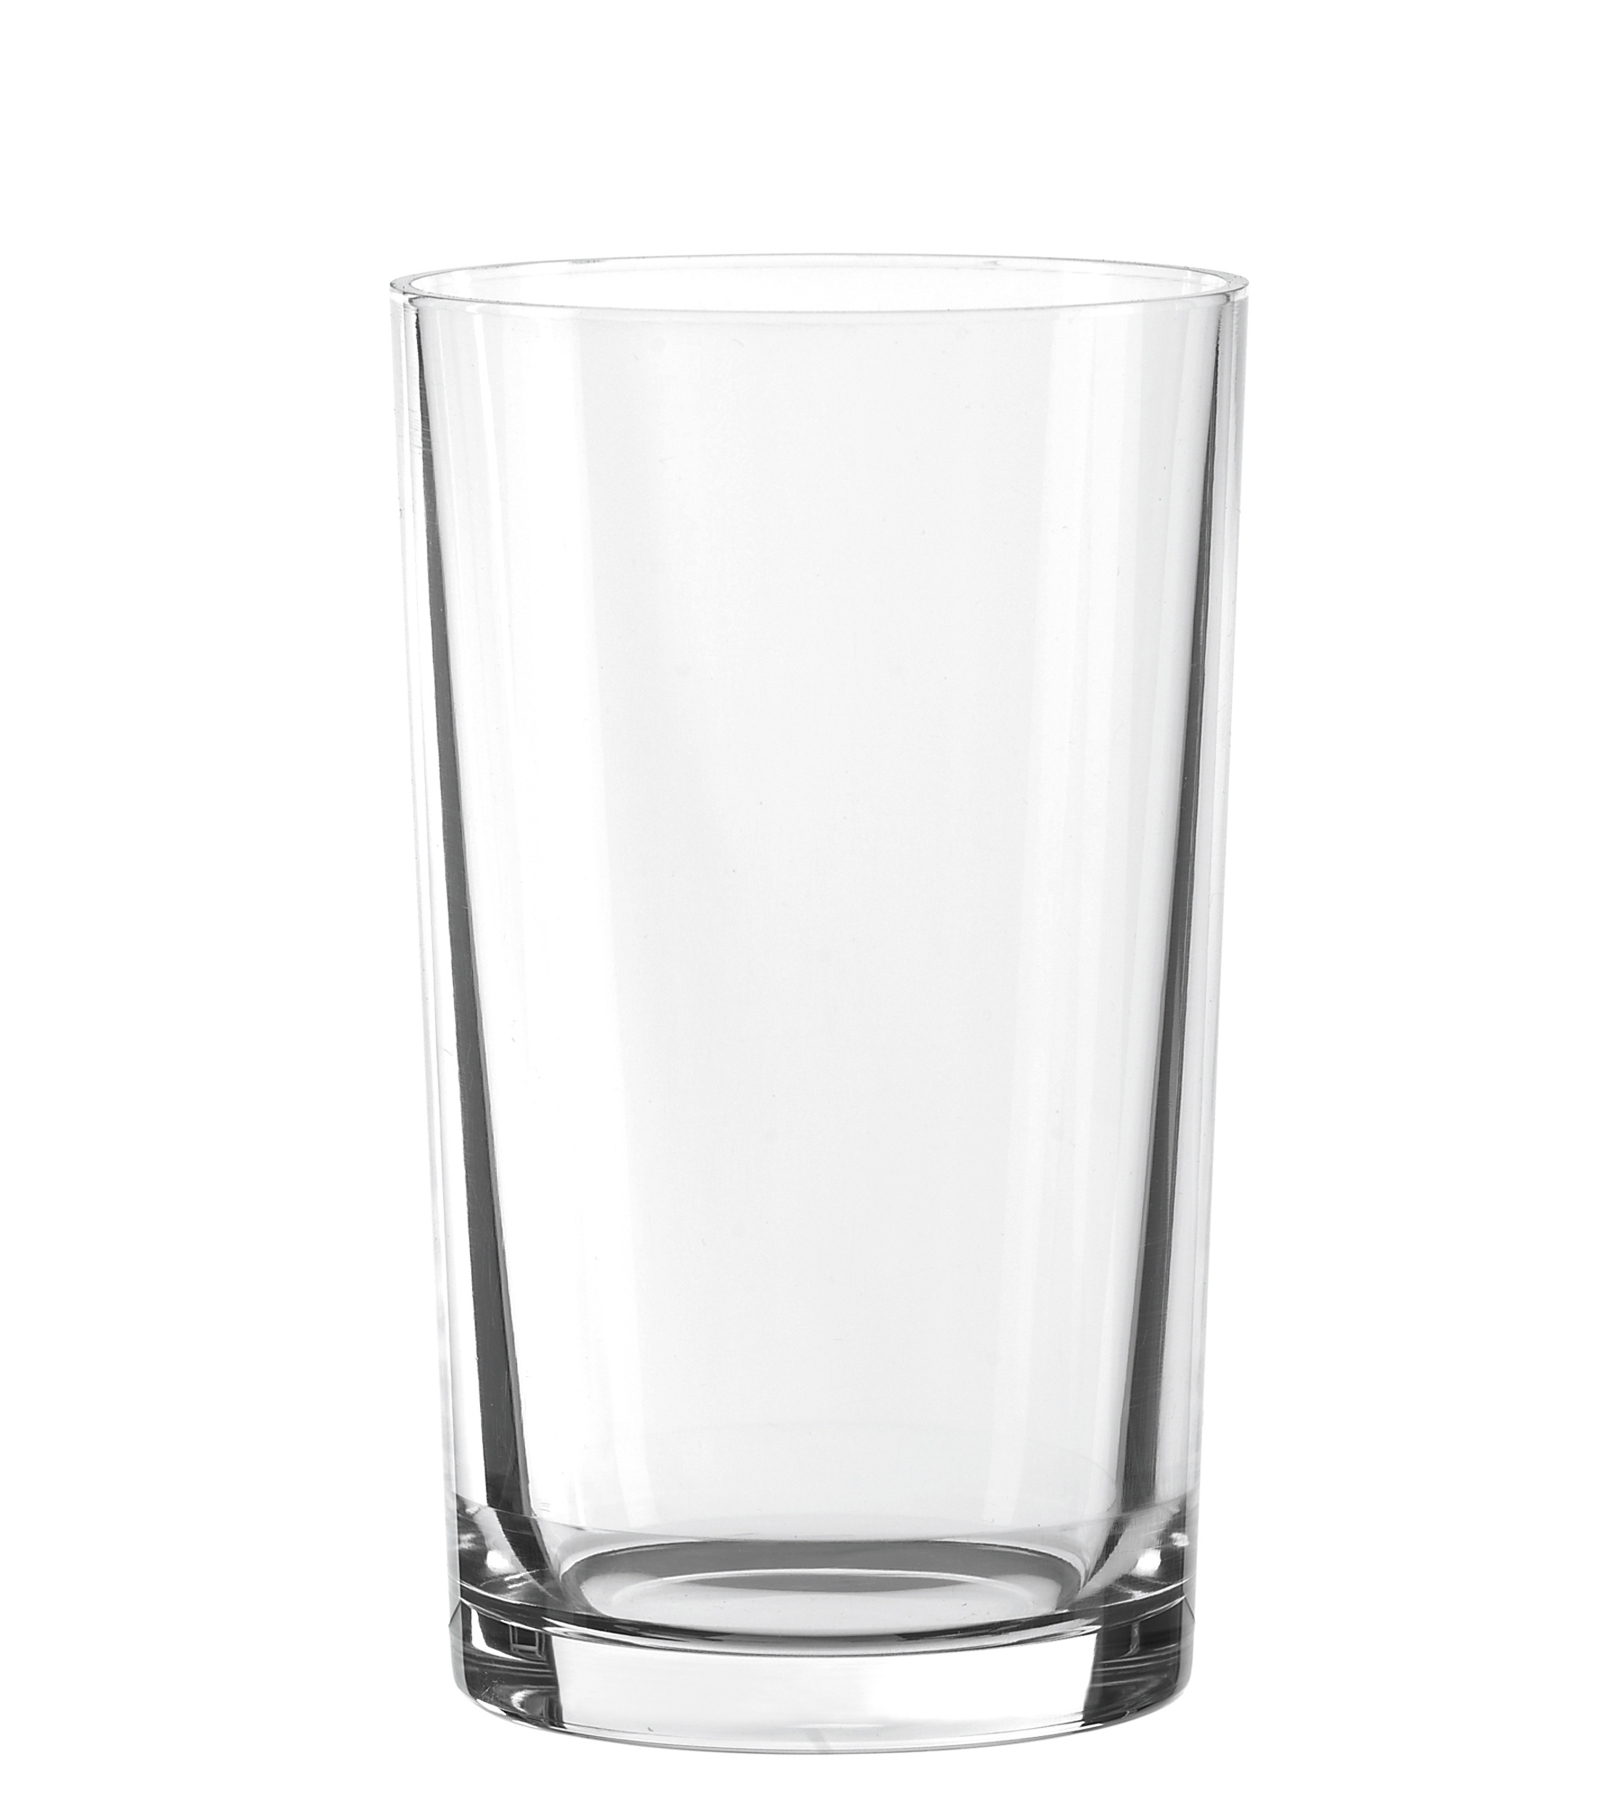 Softdrink glass Club, Spiegelau - 290ml (1 pc.)